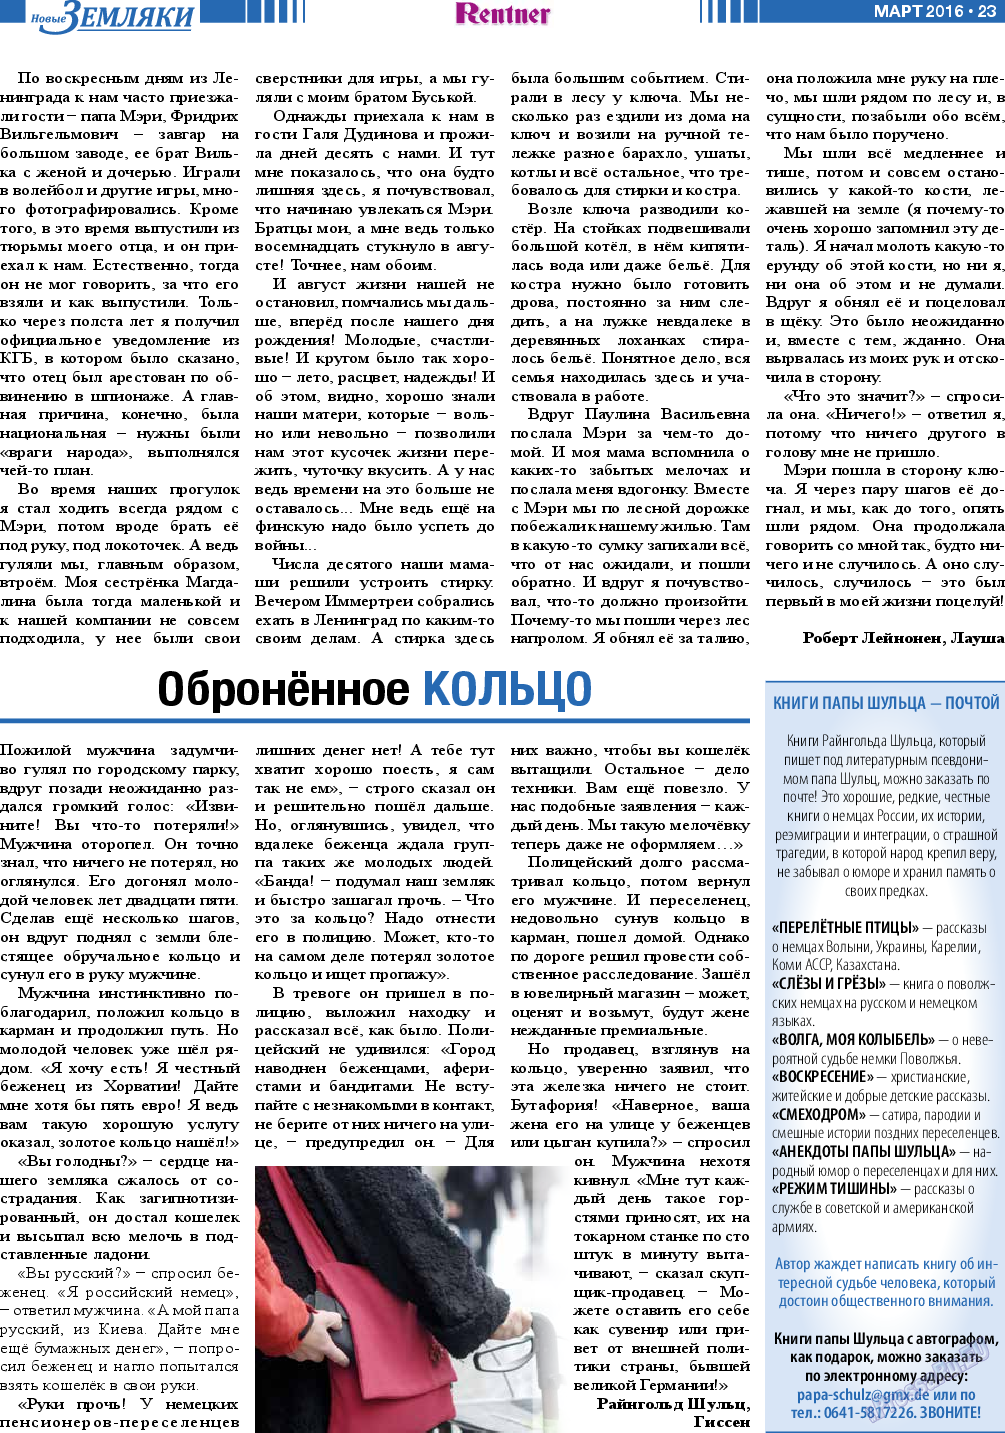 Новые Земляки, газета. 2016 №3 стр.23